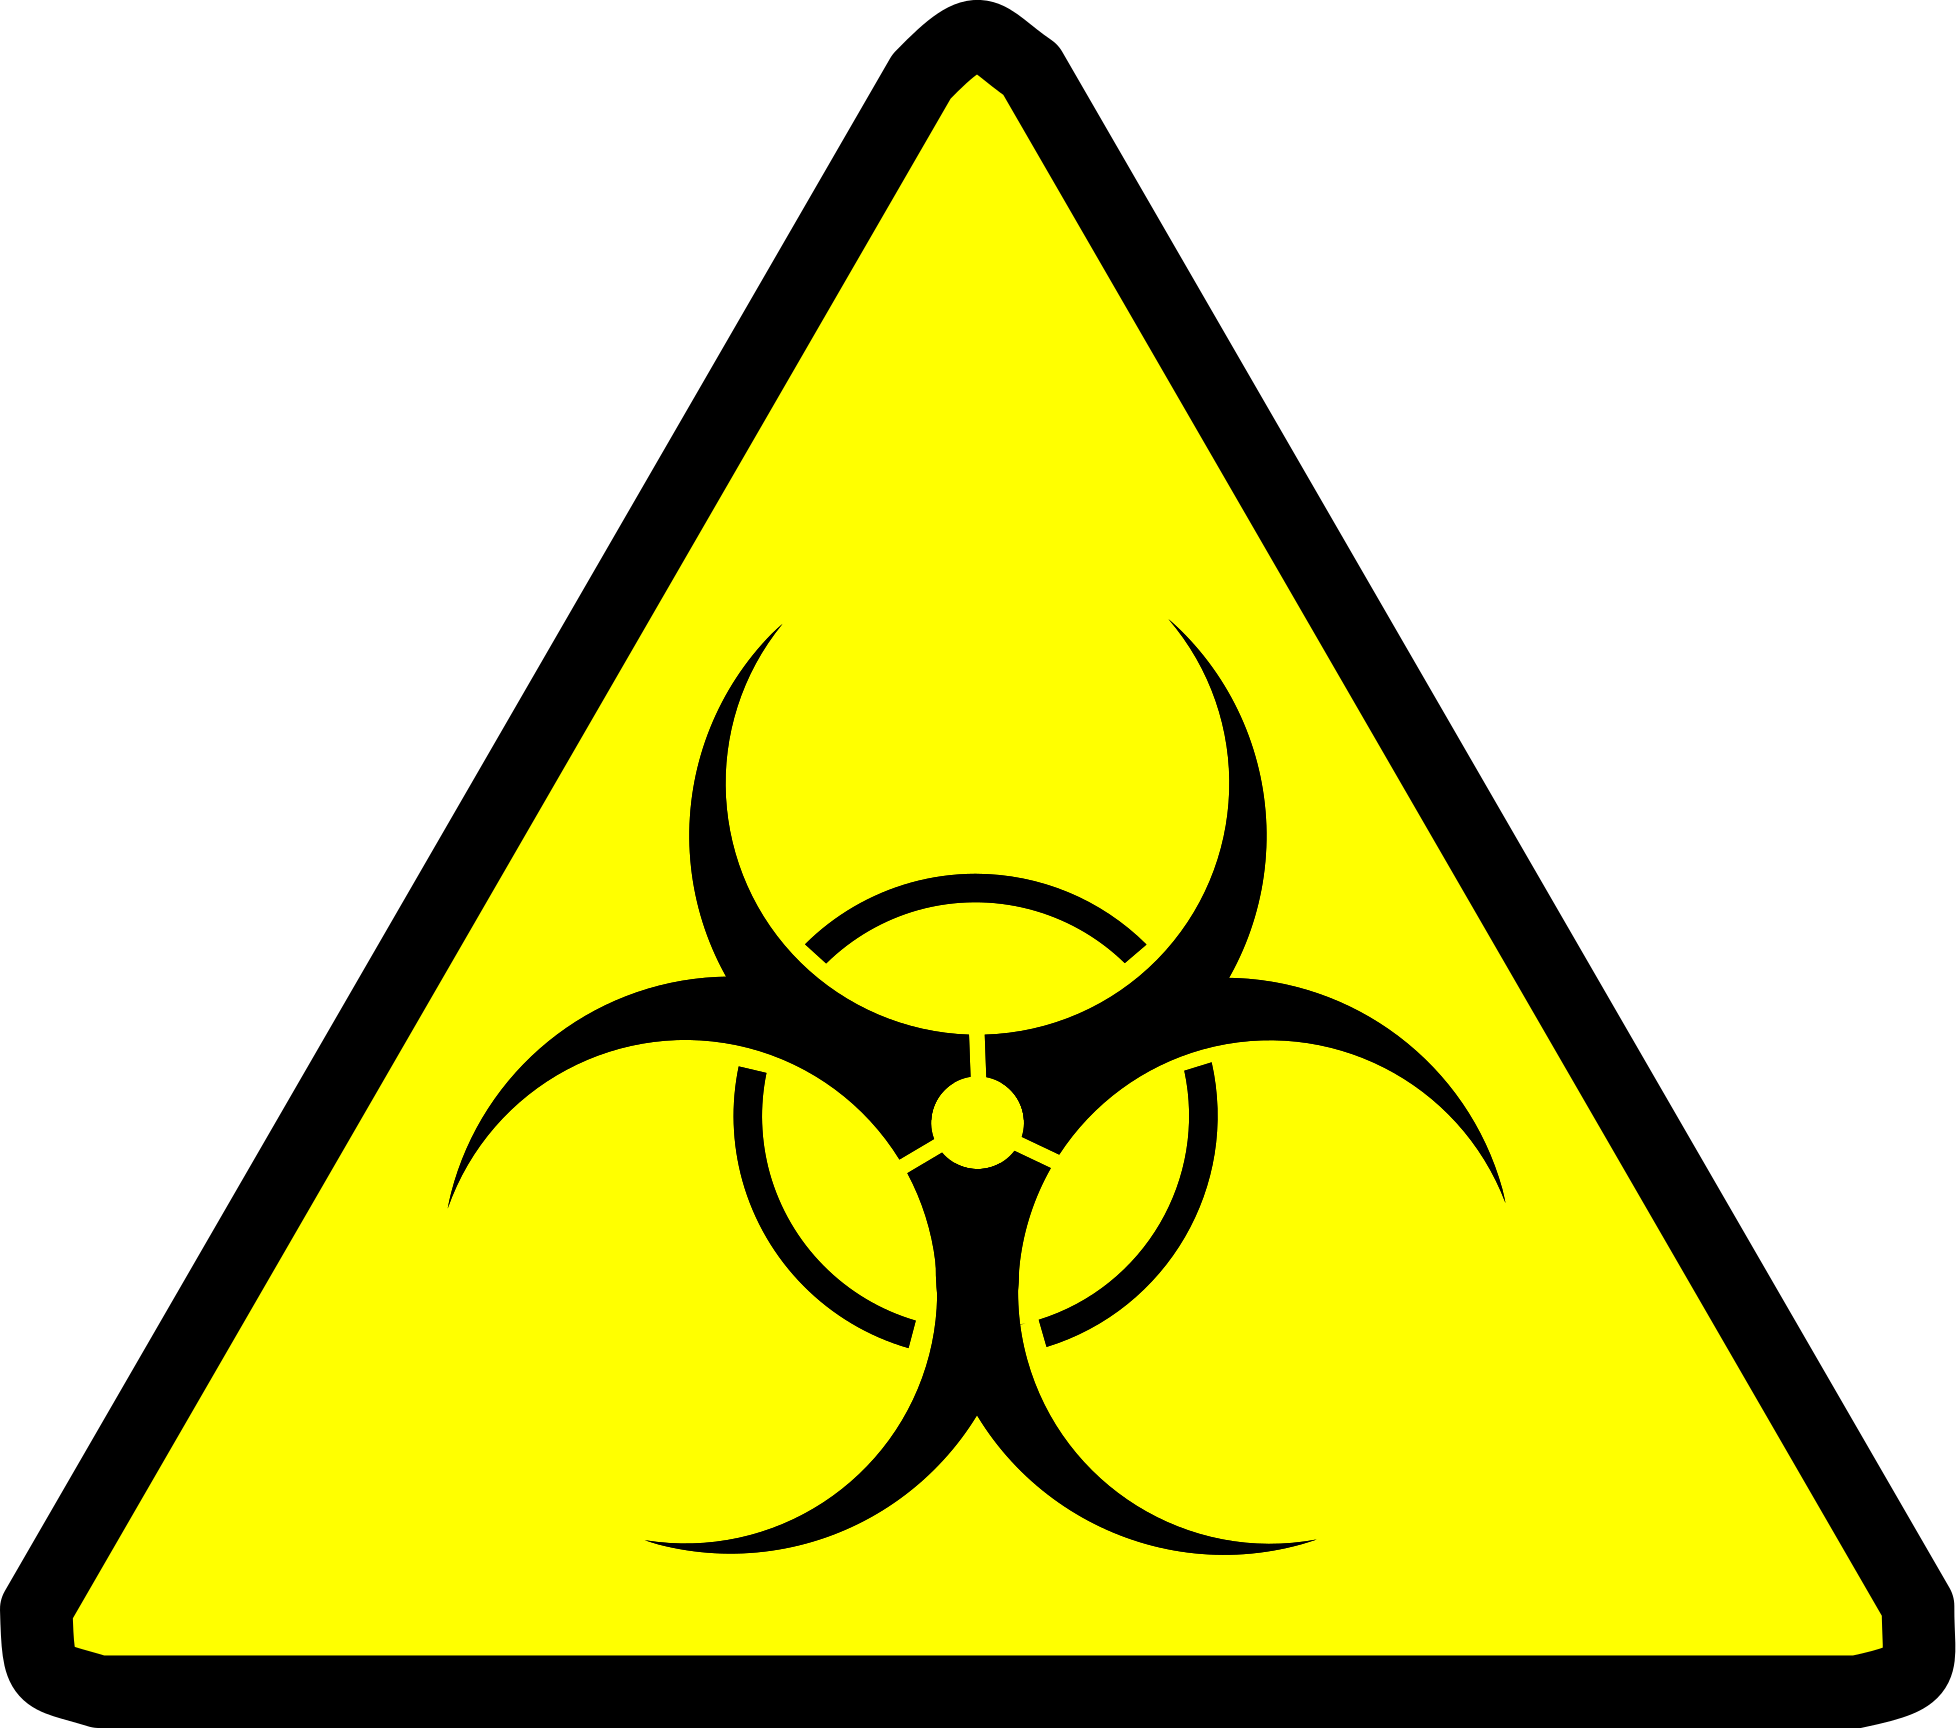 Токсичность двигателя. Знак биологической опасности - биохазард. Биохазард знак Чернобыль. Биохазард эпидемия знак. Знак бактериологической опасности.